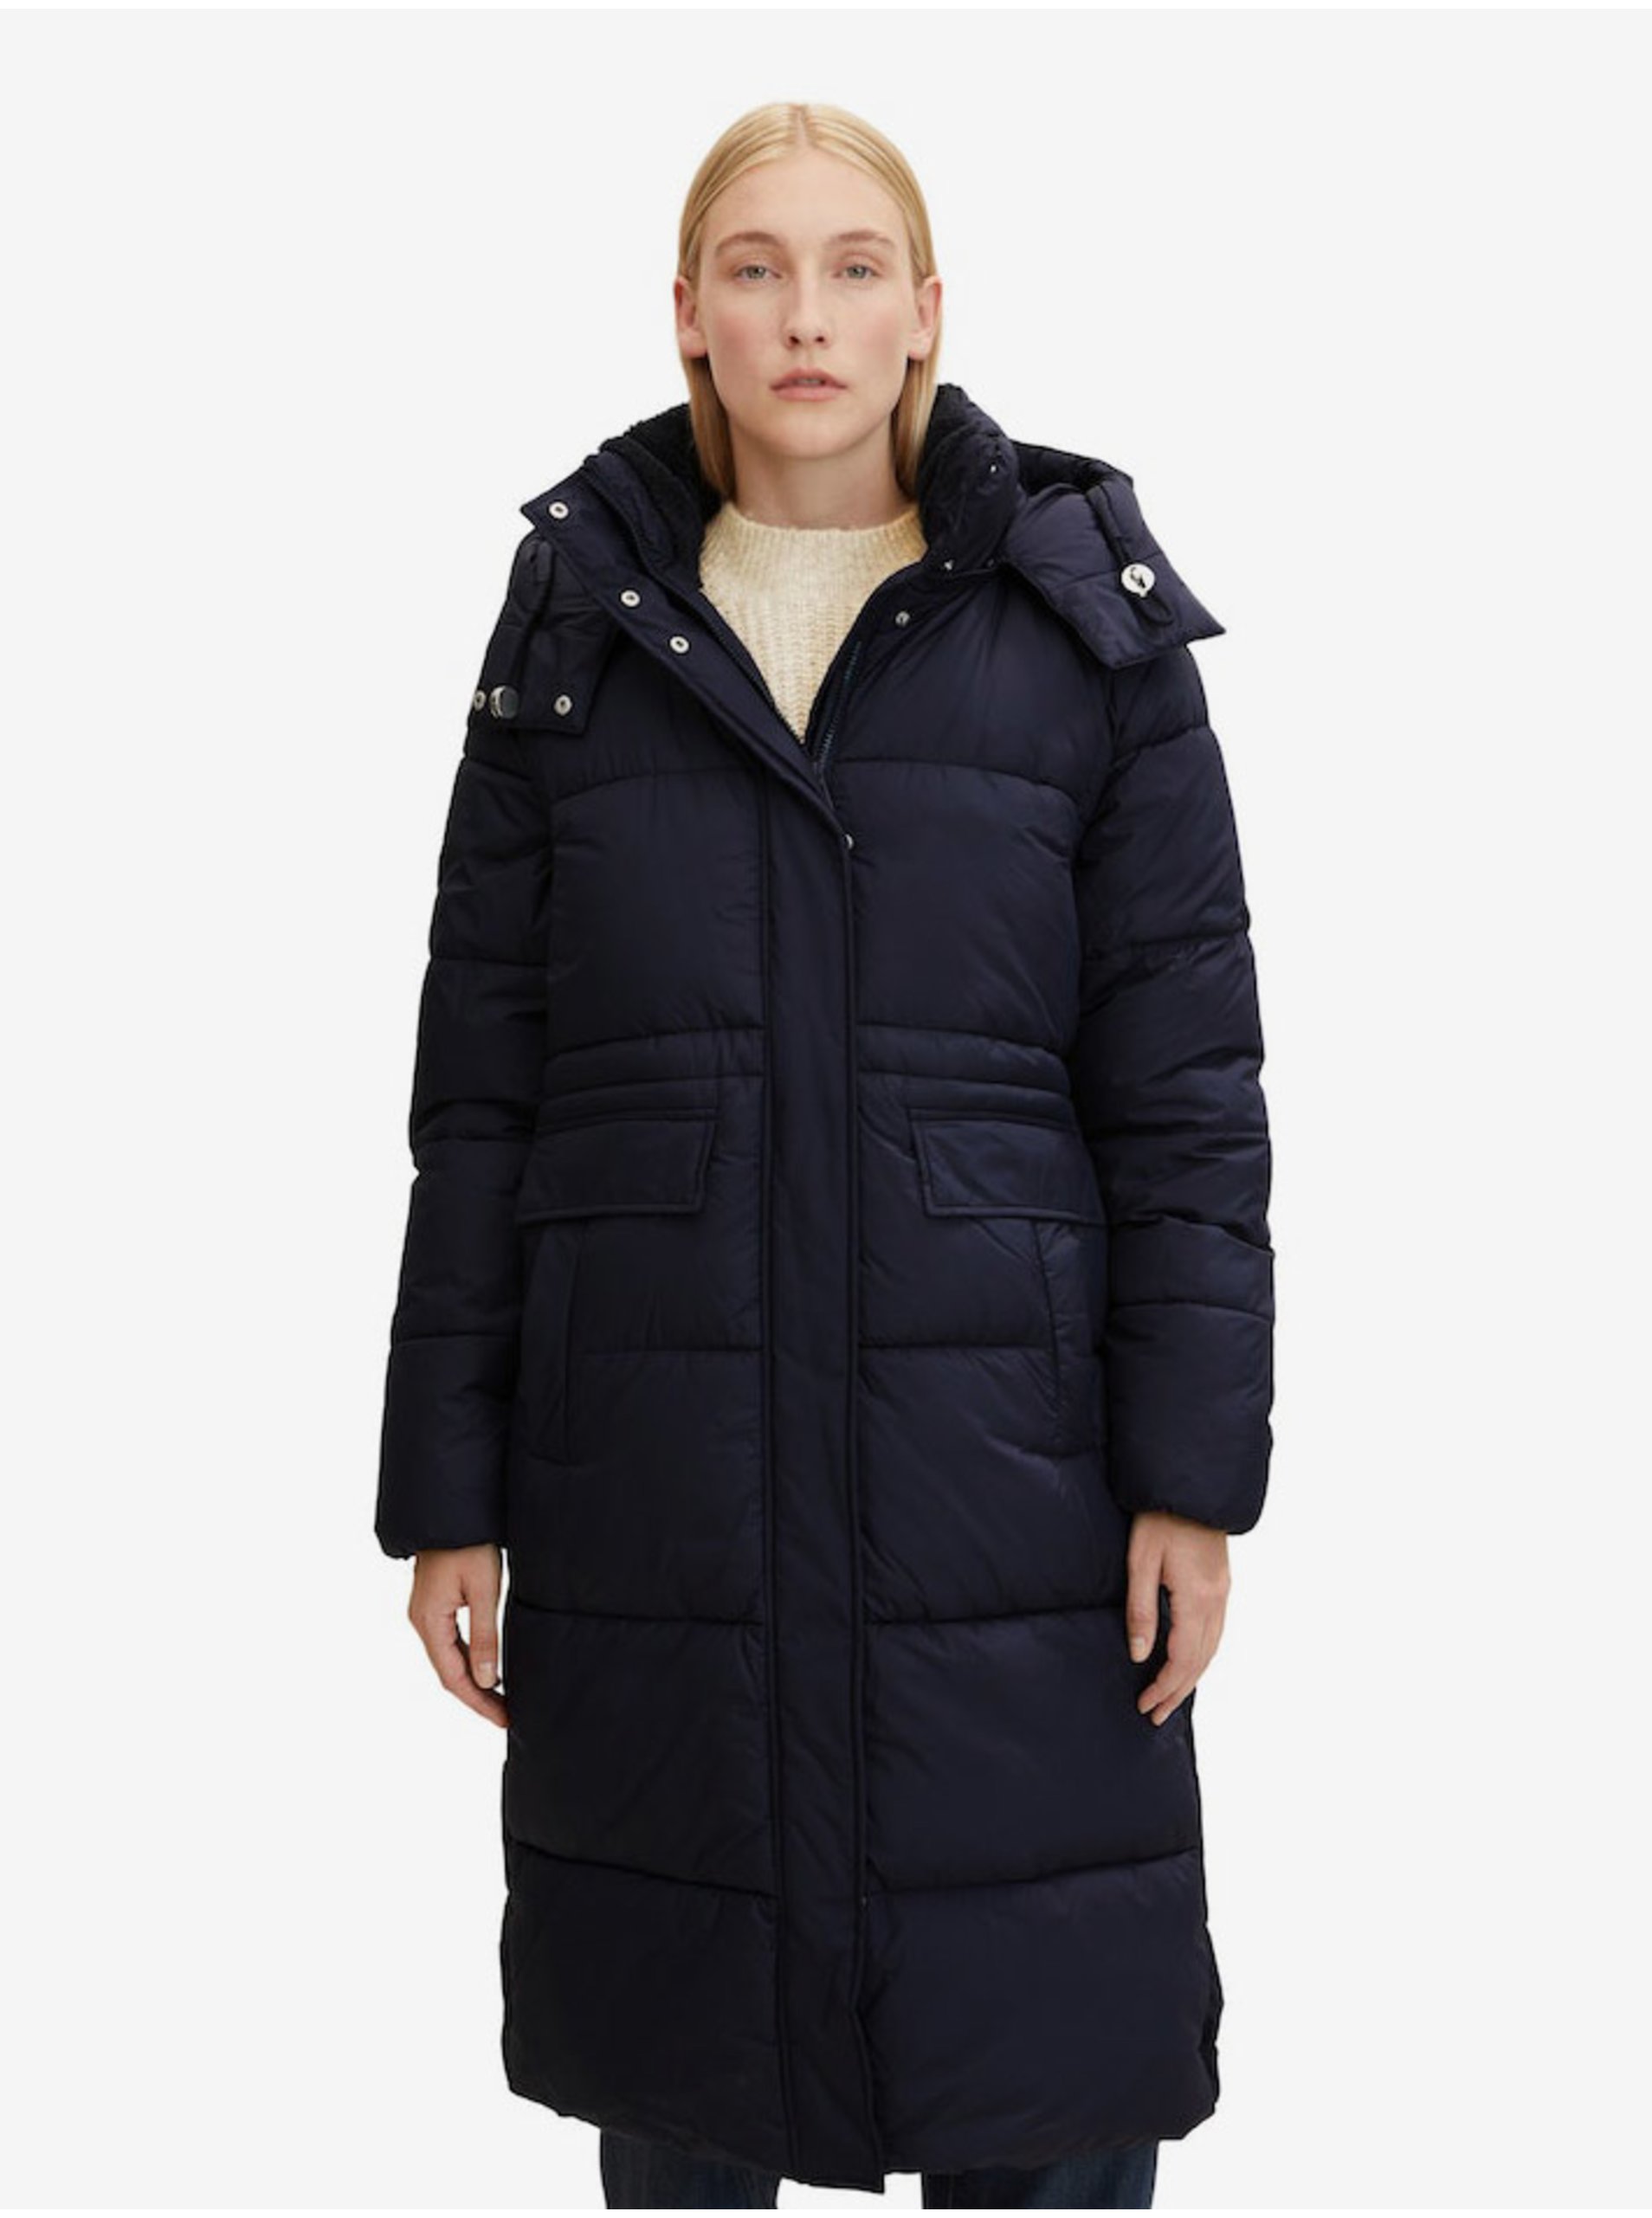 E-shop Tmavě modrý dámský prošívaný zimní kabát s odepínacími rukávy a kapucí Tom Tailor